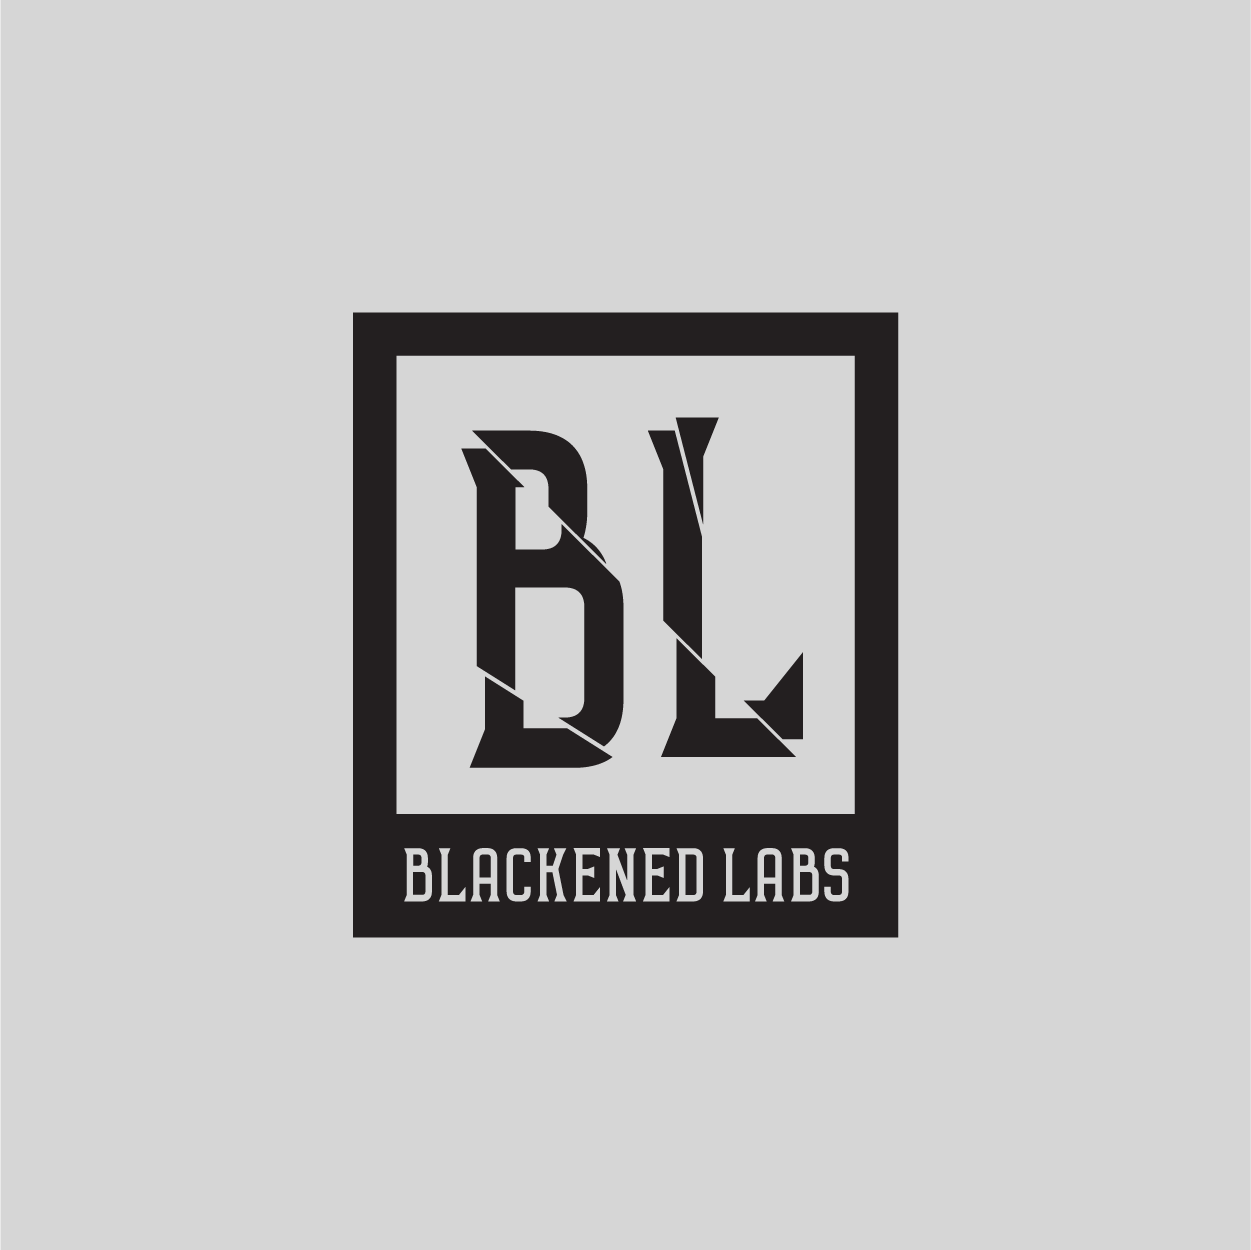 Blackened Labs